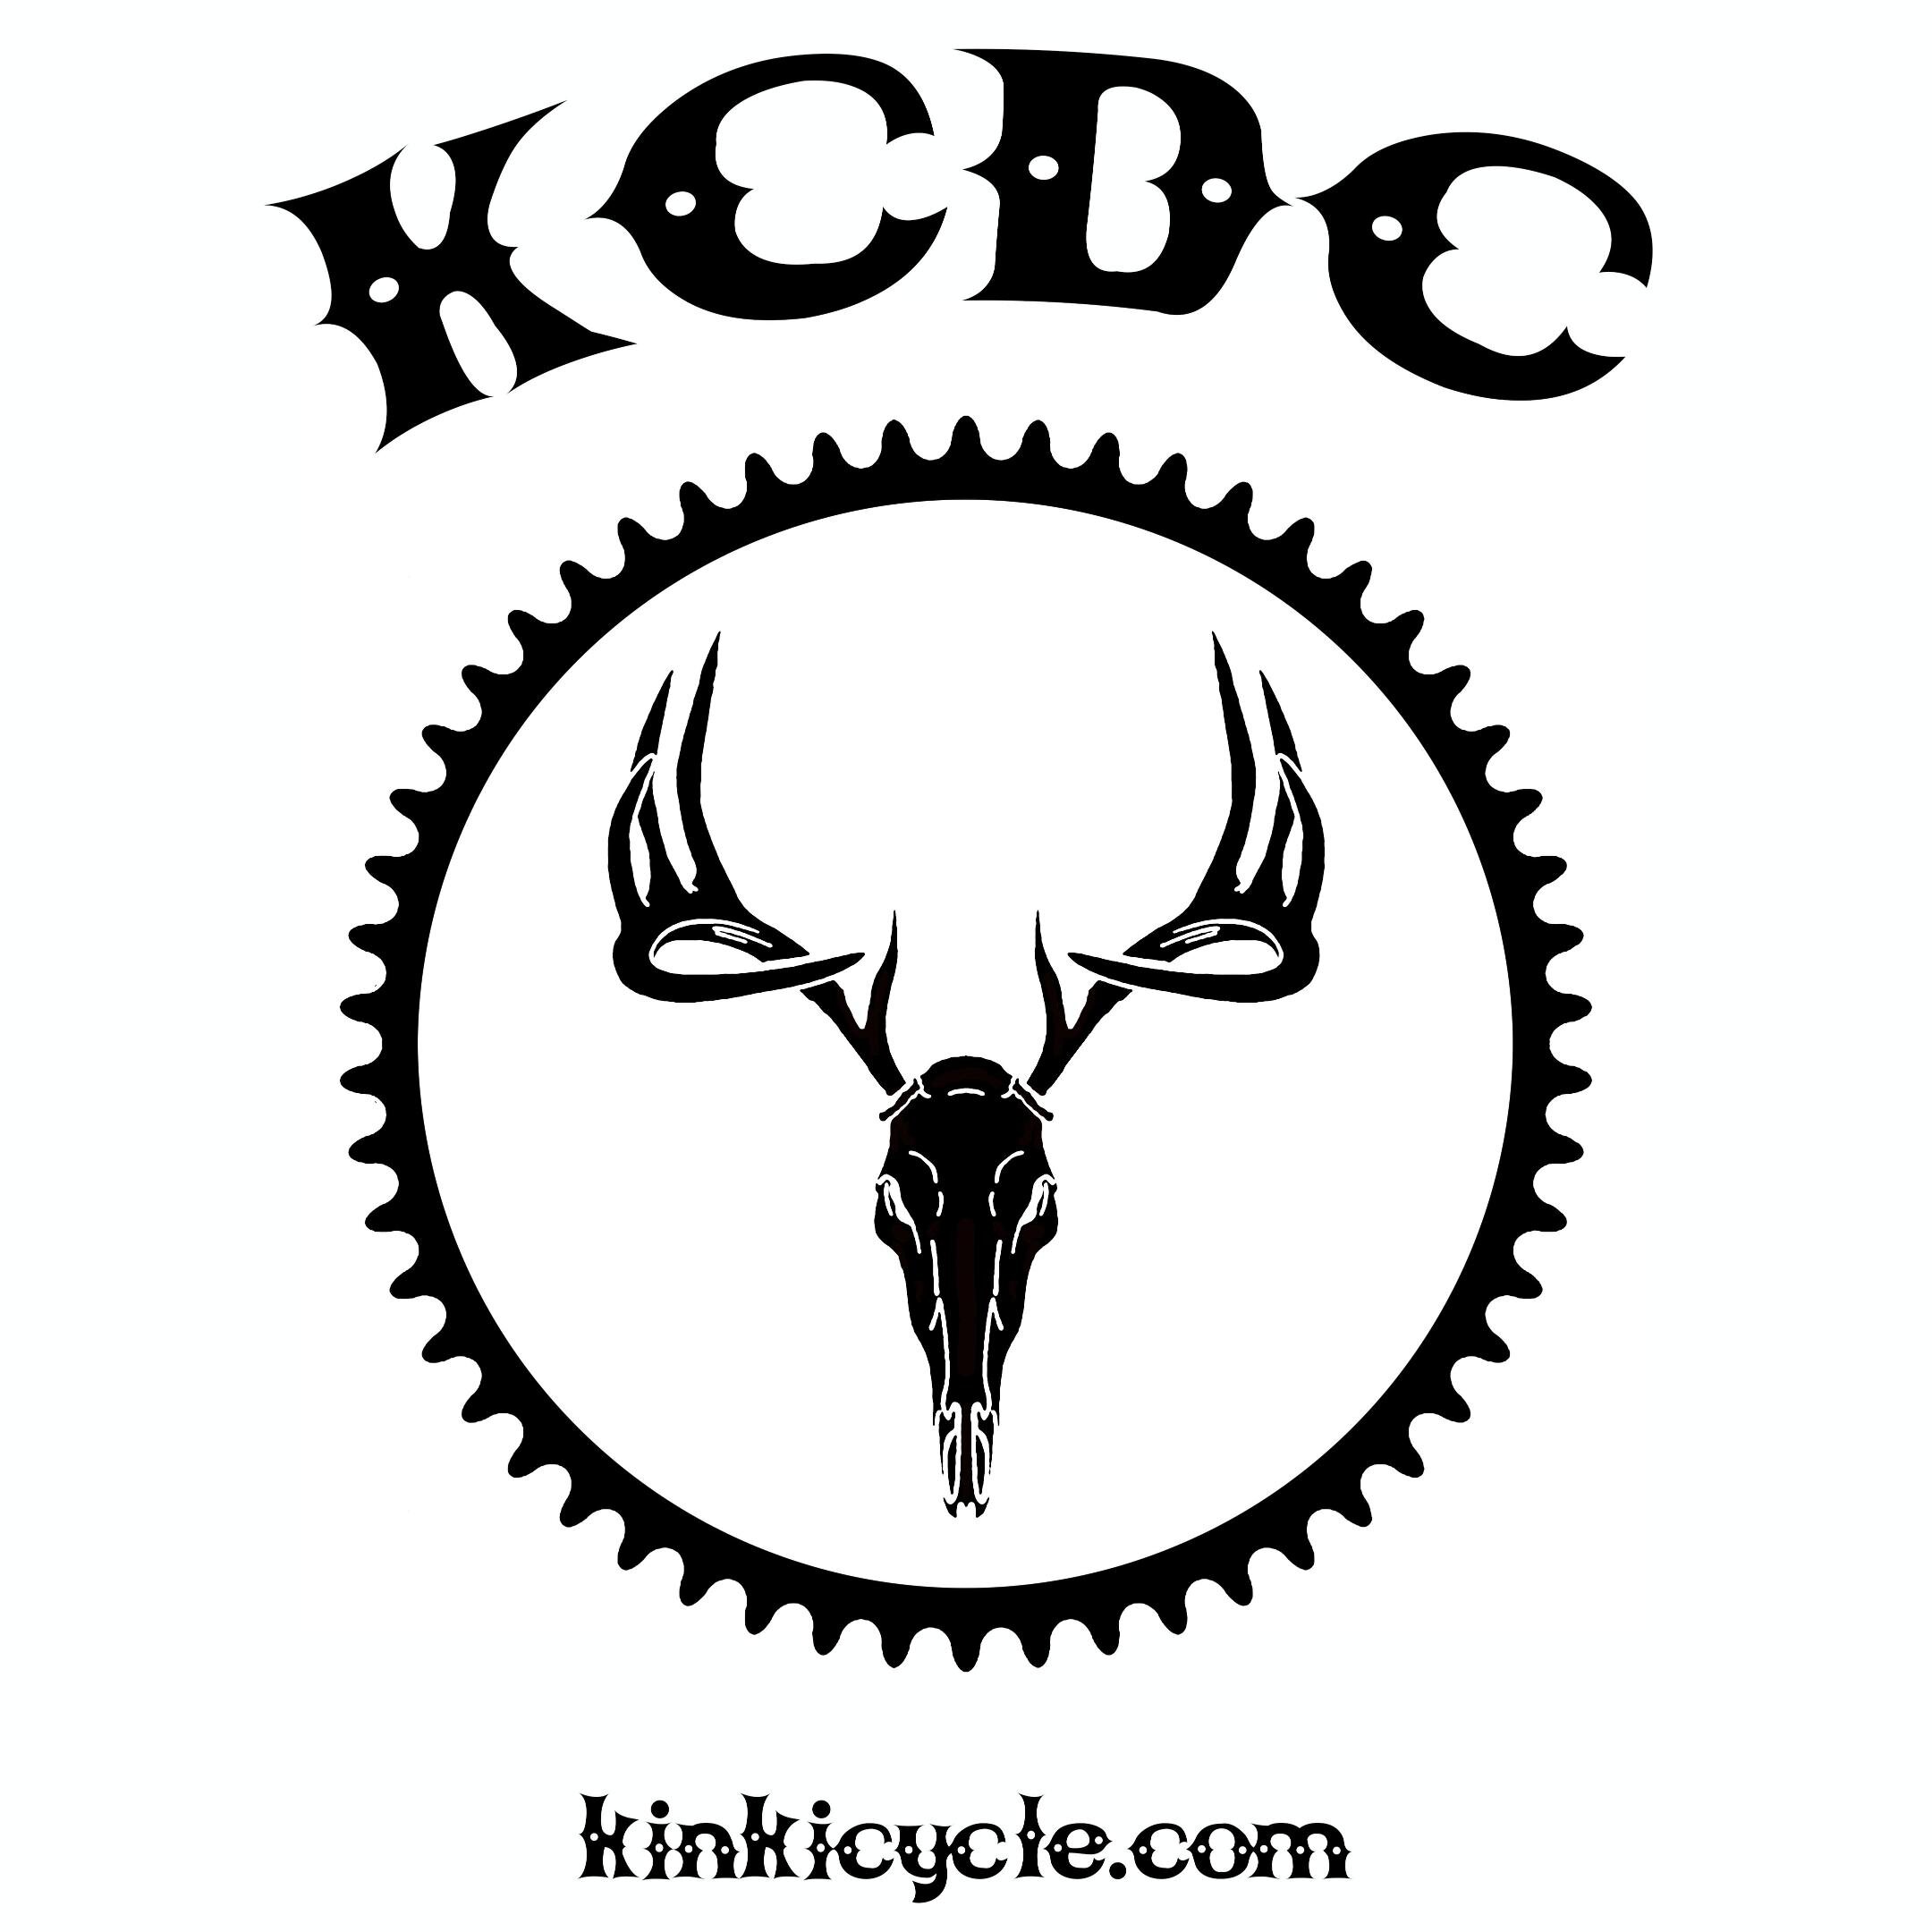 Kinkicycle.com